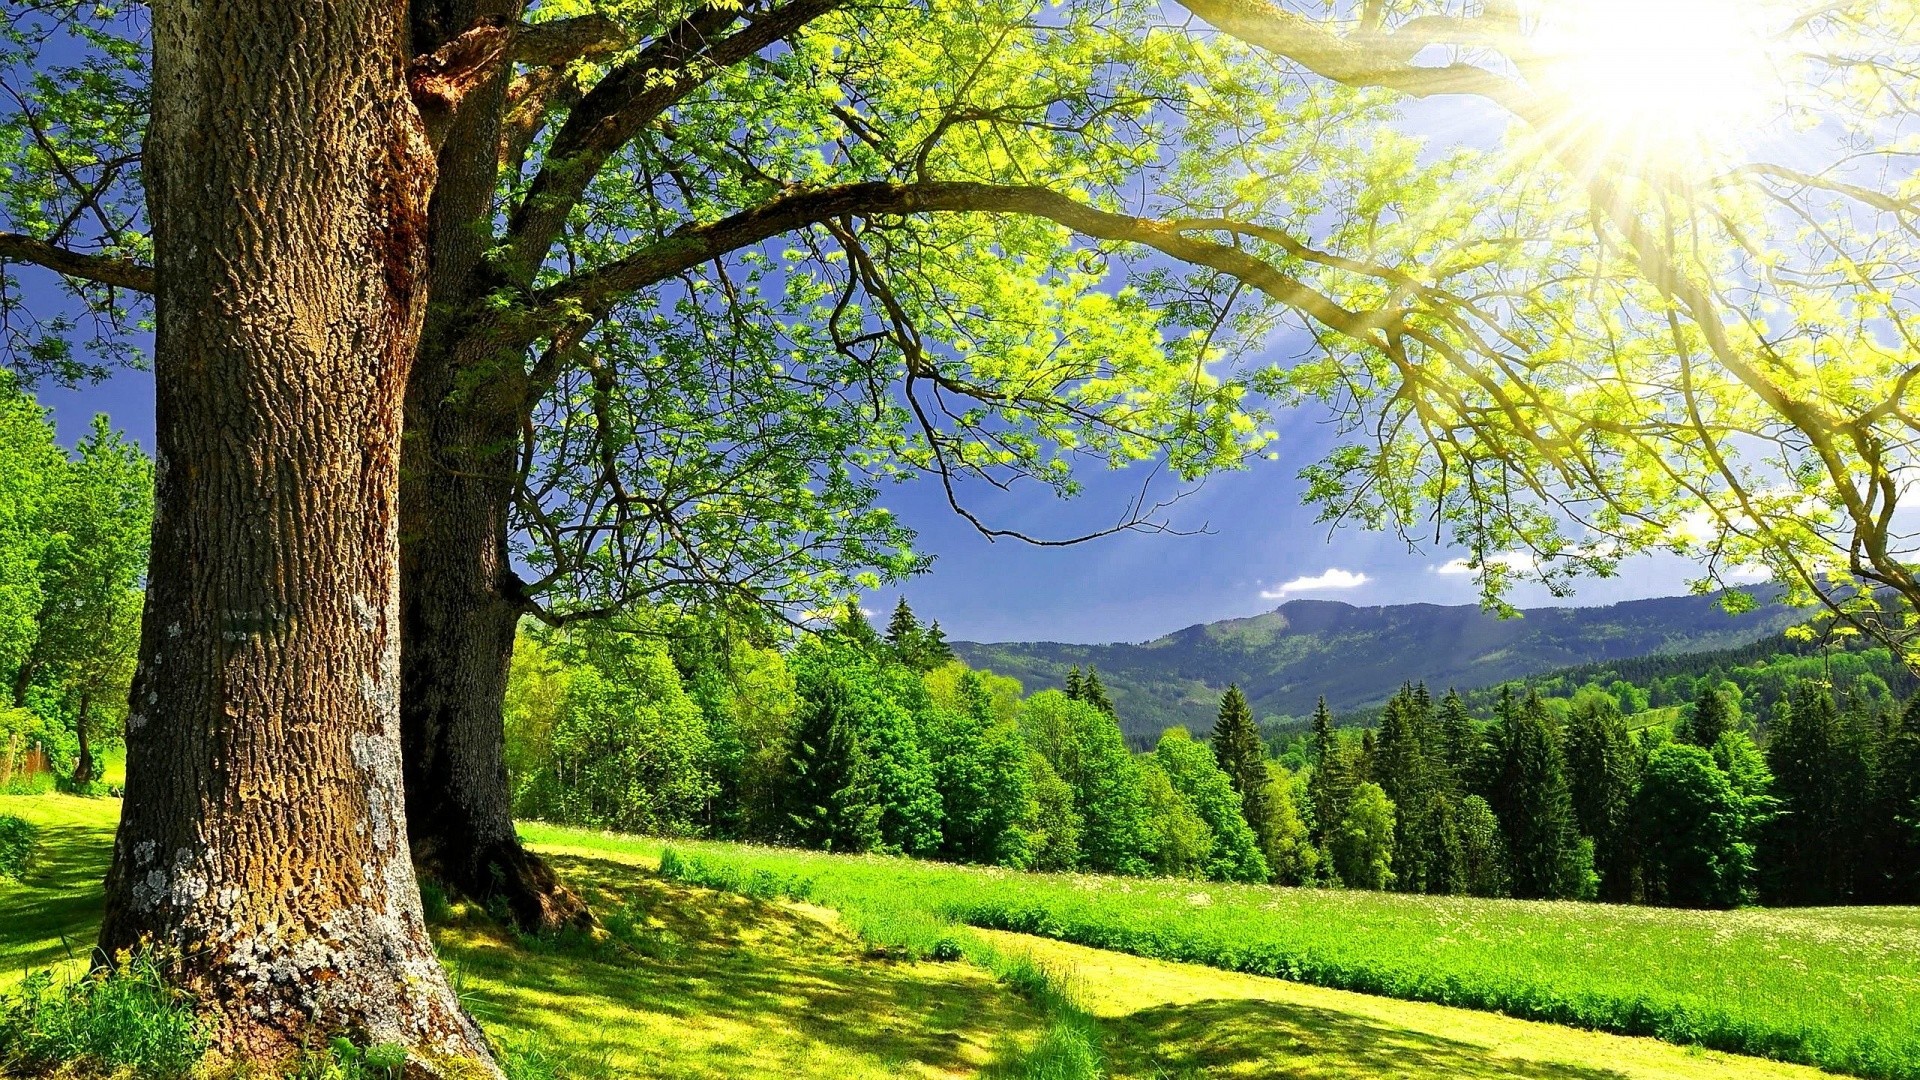 fond d'écran hd 1920x1080,paysage naturel,la nature,arbre,vert,ciel